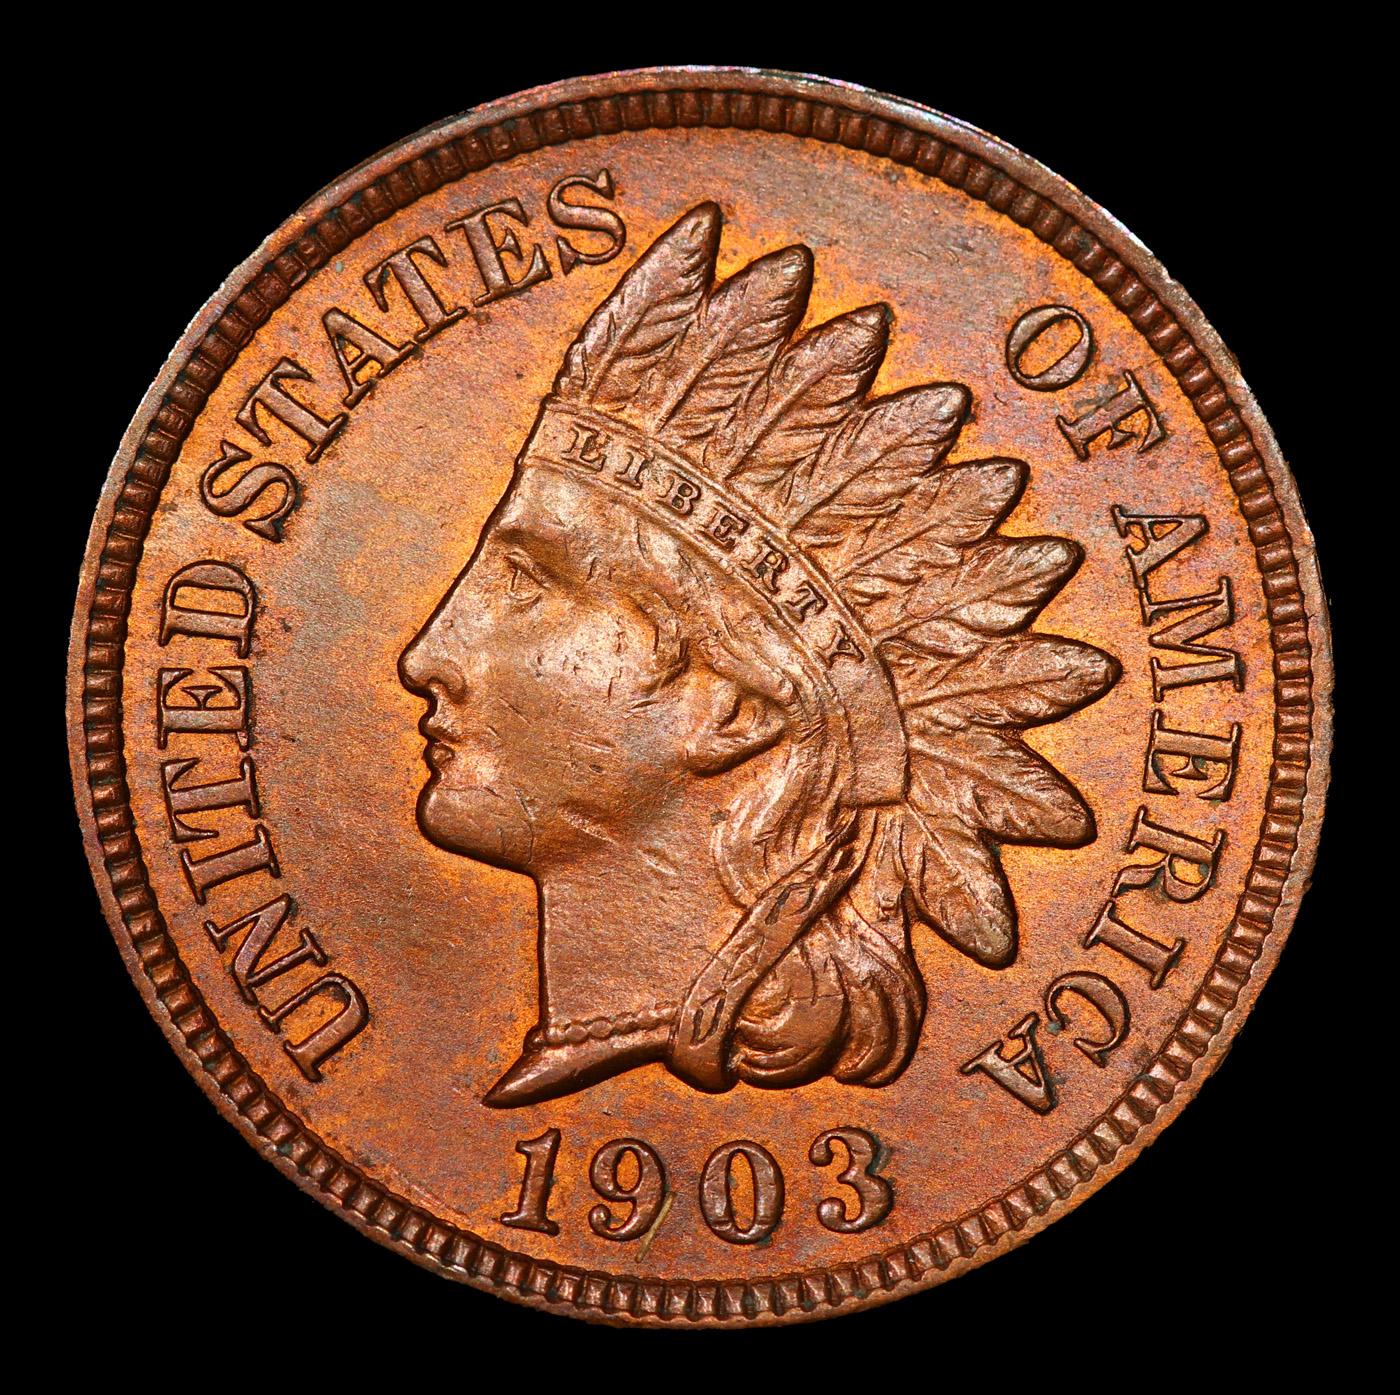 1903 Indian Cent 1c Grades Select Unc RB